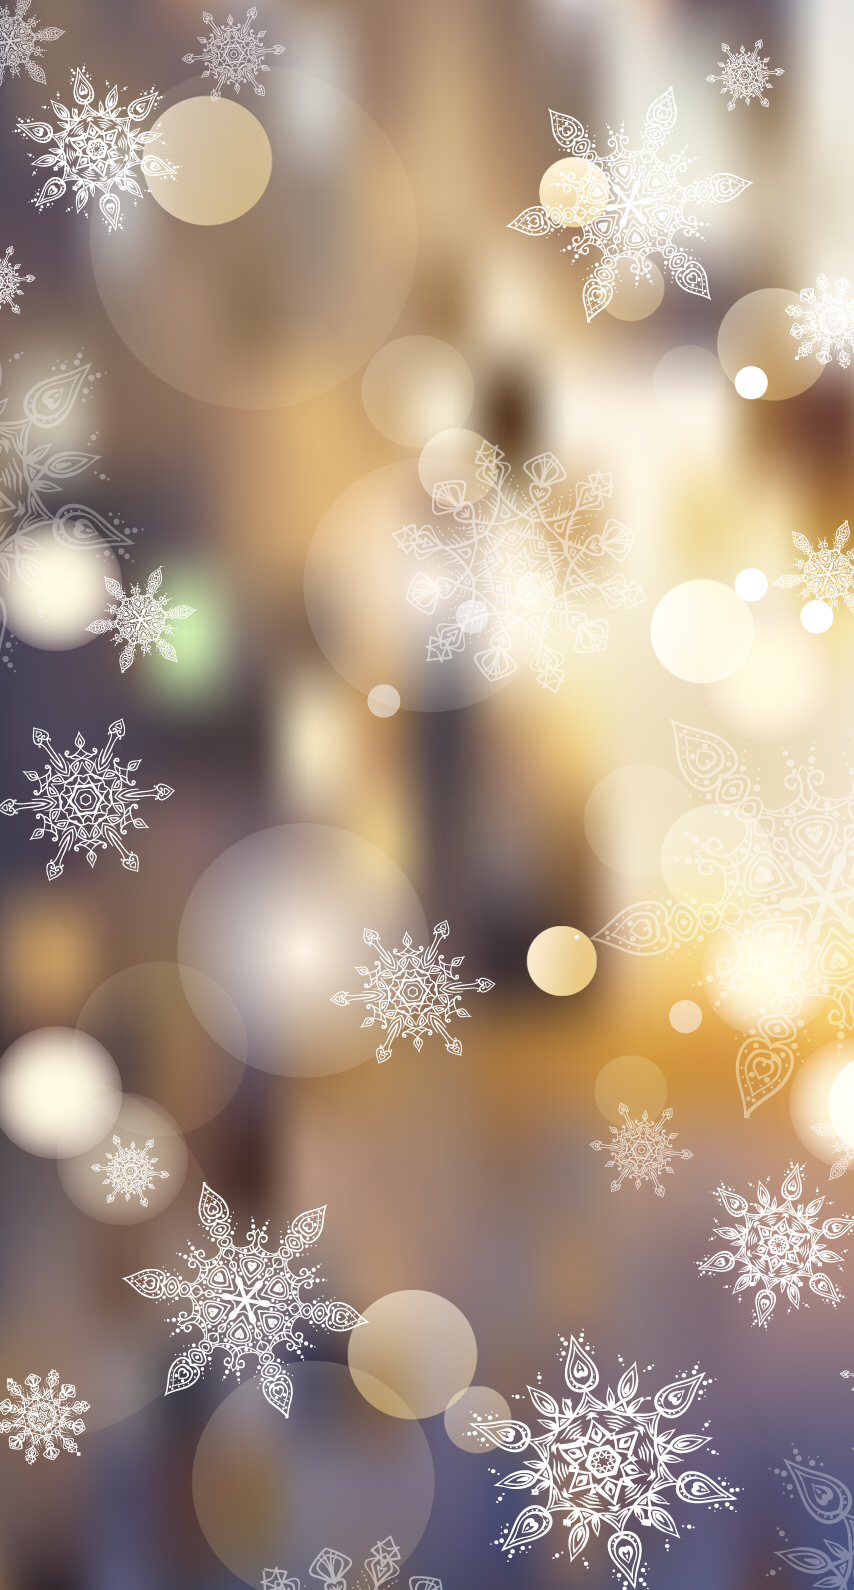 Snowflakes & Bubbles. Fundo do iphone, Fundos de natal, Papel de parede do iphone